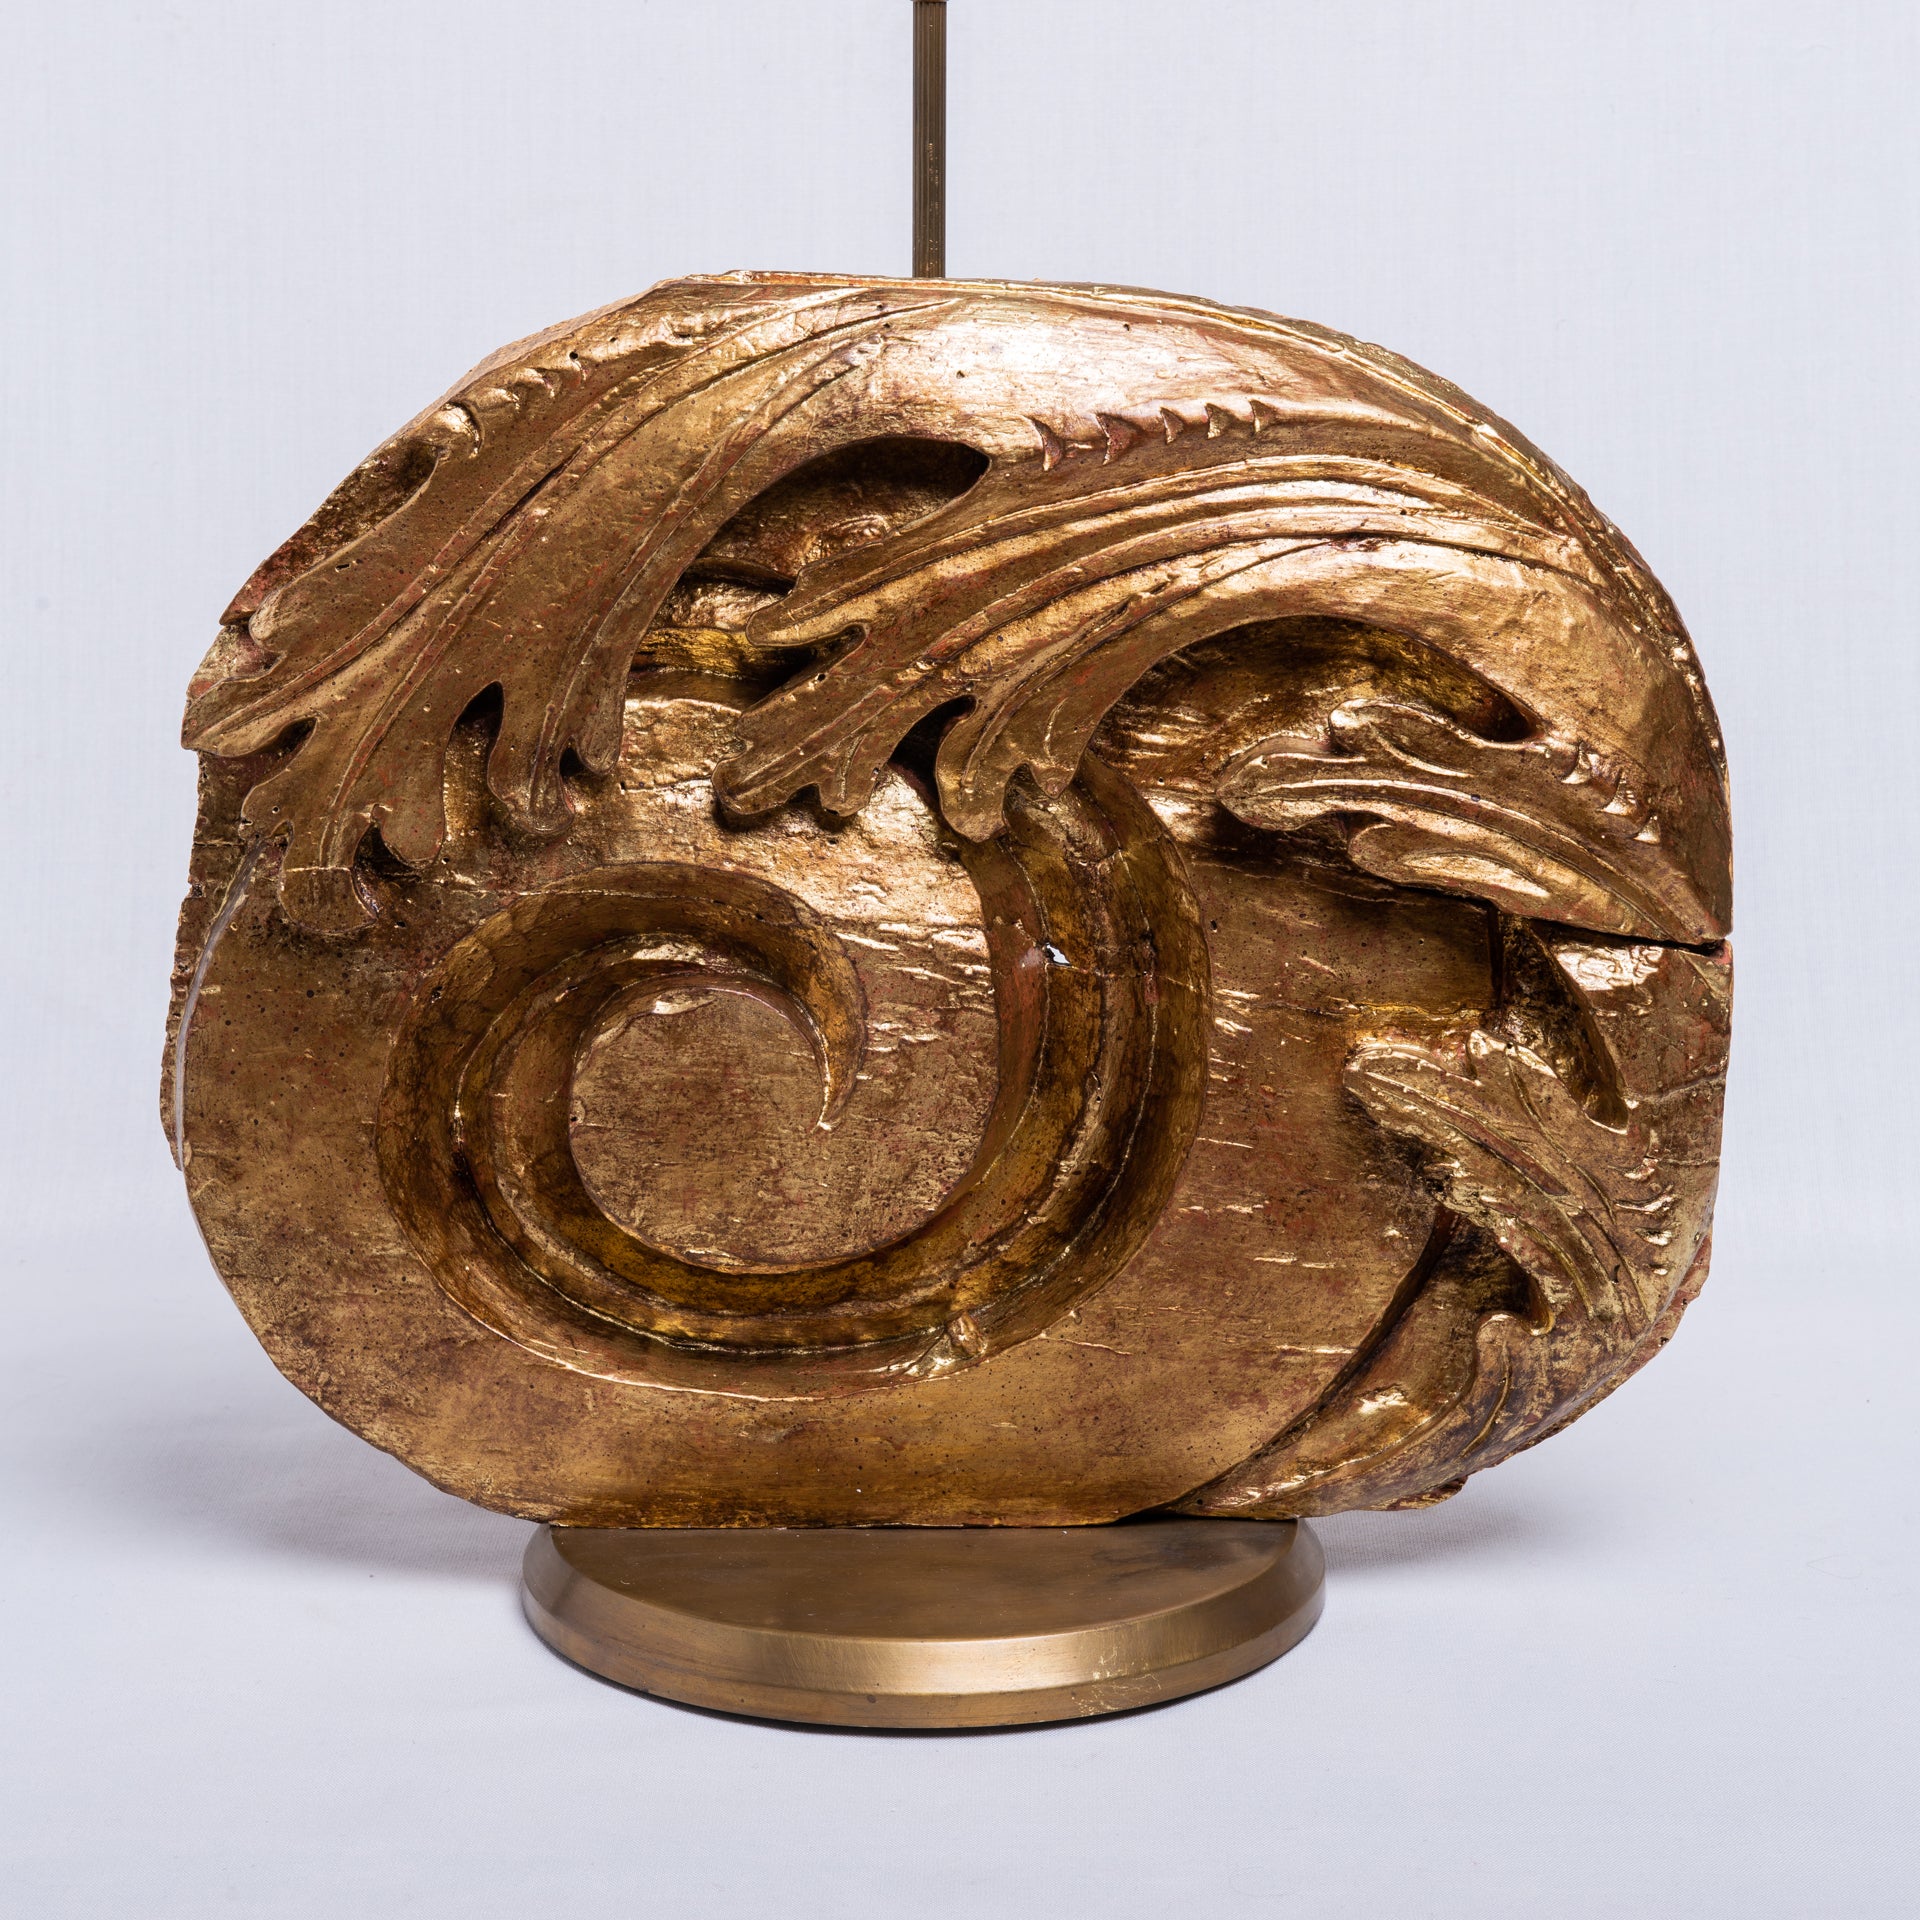  Ein großer Holzfries aus dem Jahr 1600, der von wer weiß woher kam, aber auf dem legalen Antiquitätenmarkt gekauft wurde, unverschämt blattvergoldet und auf eine Lampe montiert, ist wieder zum Leben erwacht. Es kann ein traditioneller Hut oder